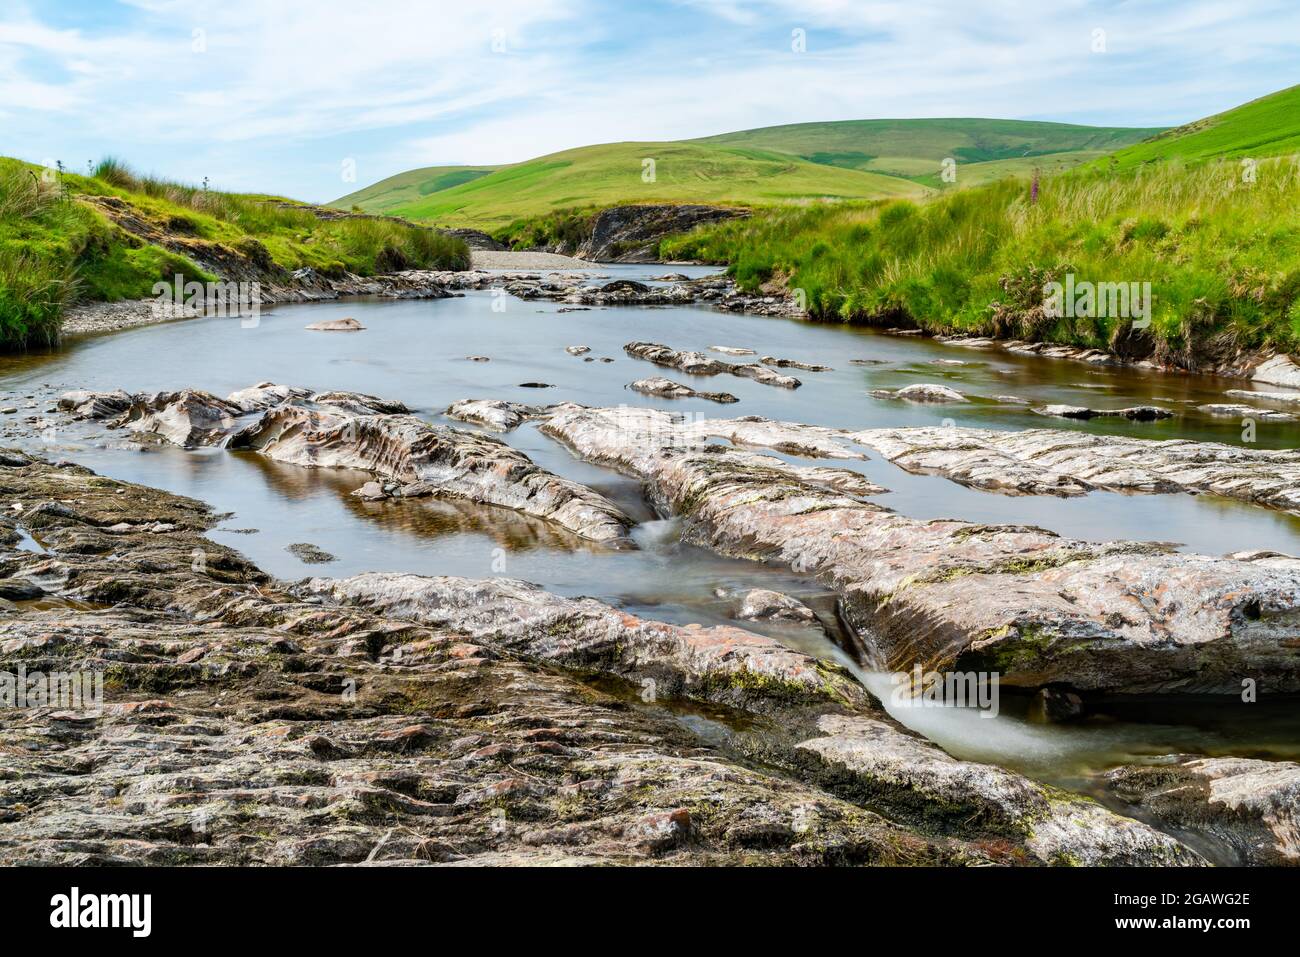 Vue sur la magnifique campagne galloise avec la rivière Afon Elan dans la vallée d'Elan, Powys, pays de Galles. Effet de longue exposition. Banque D'Images